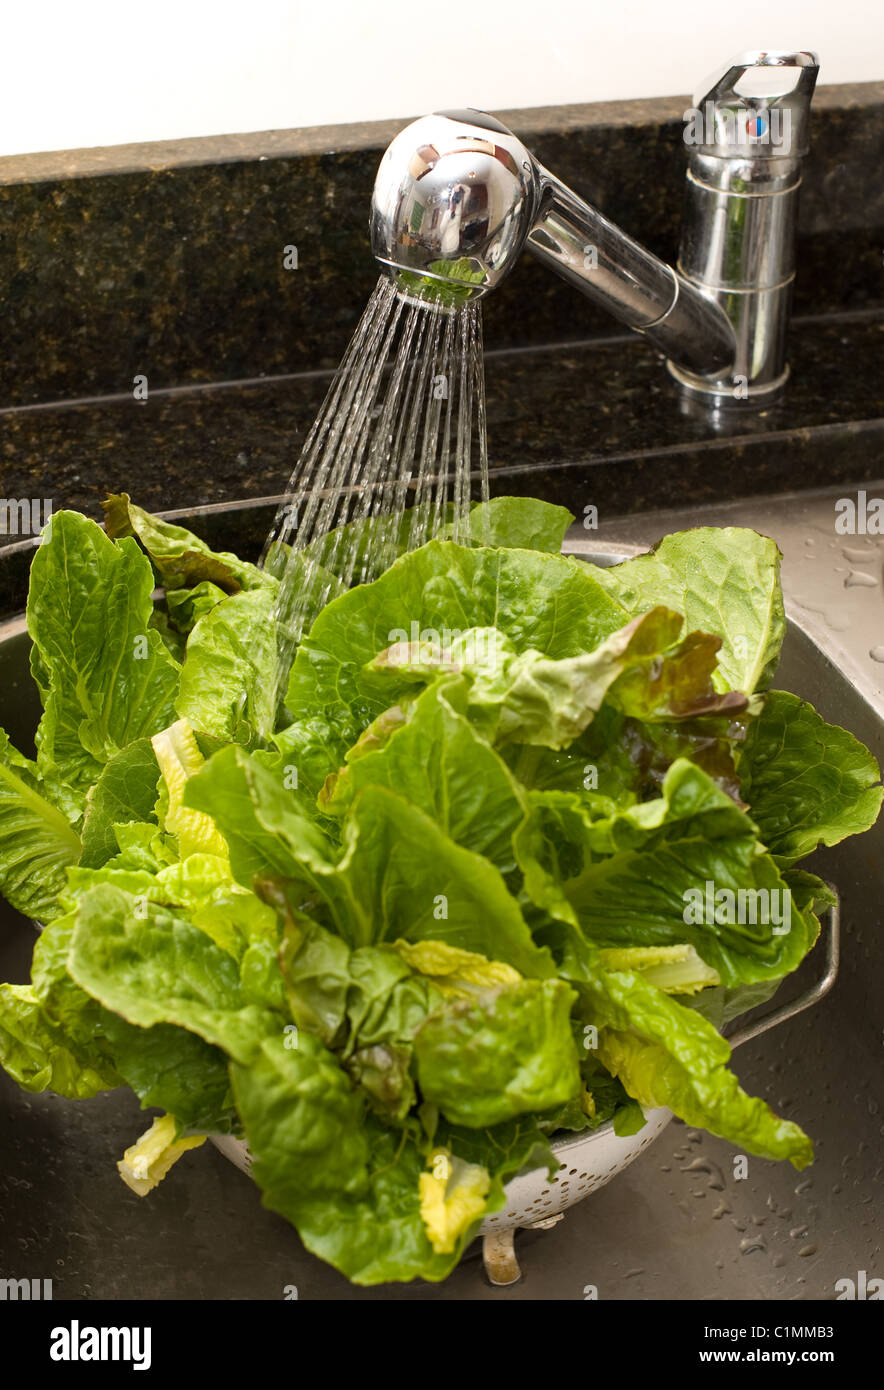 Waschen von Salat, um Schmutz und Bakterien entfernen Stockfoto